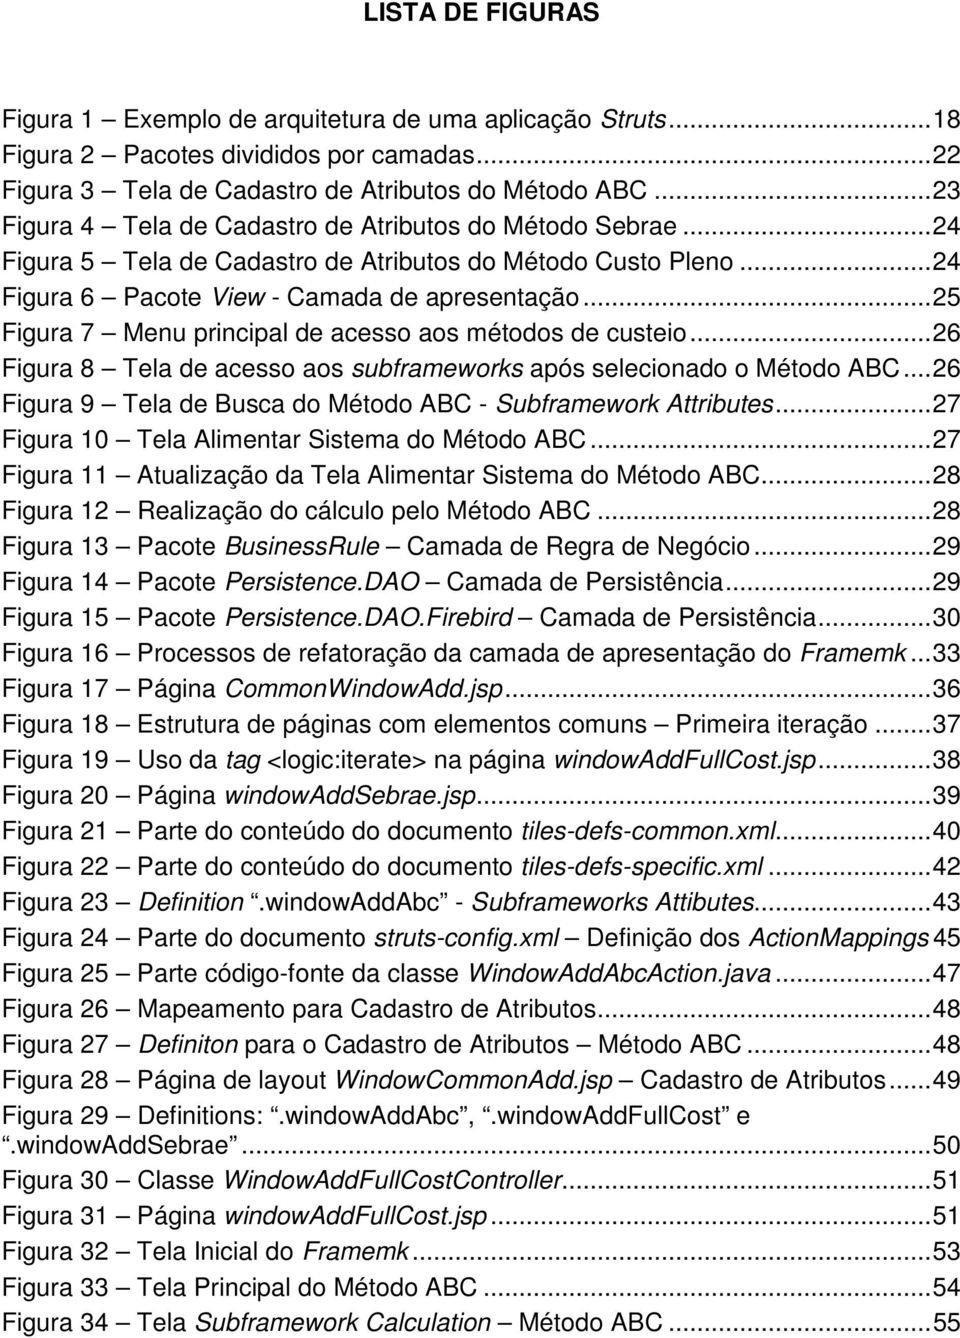 .. 25 Figura 7 Menu principal de acesso aos métodos de custeio... 26 Figura 8 Tela de acesso aos subframeworks após selecionado o Método ABC.